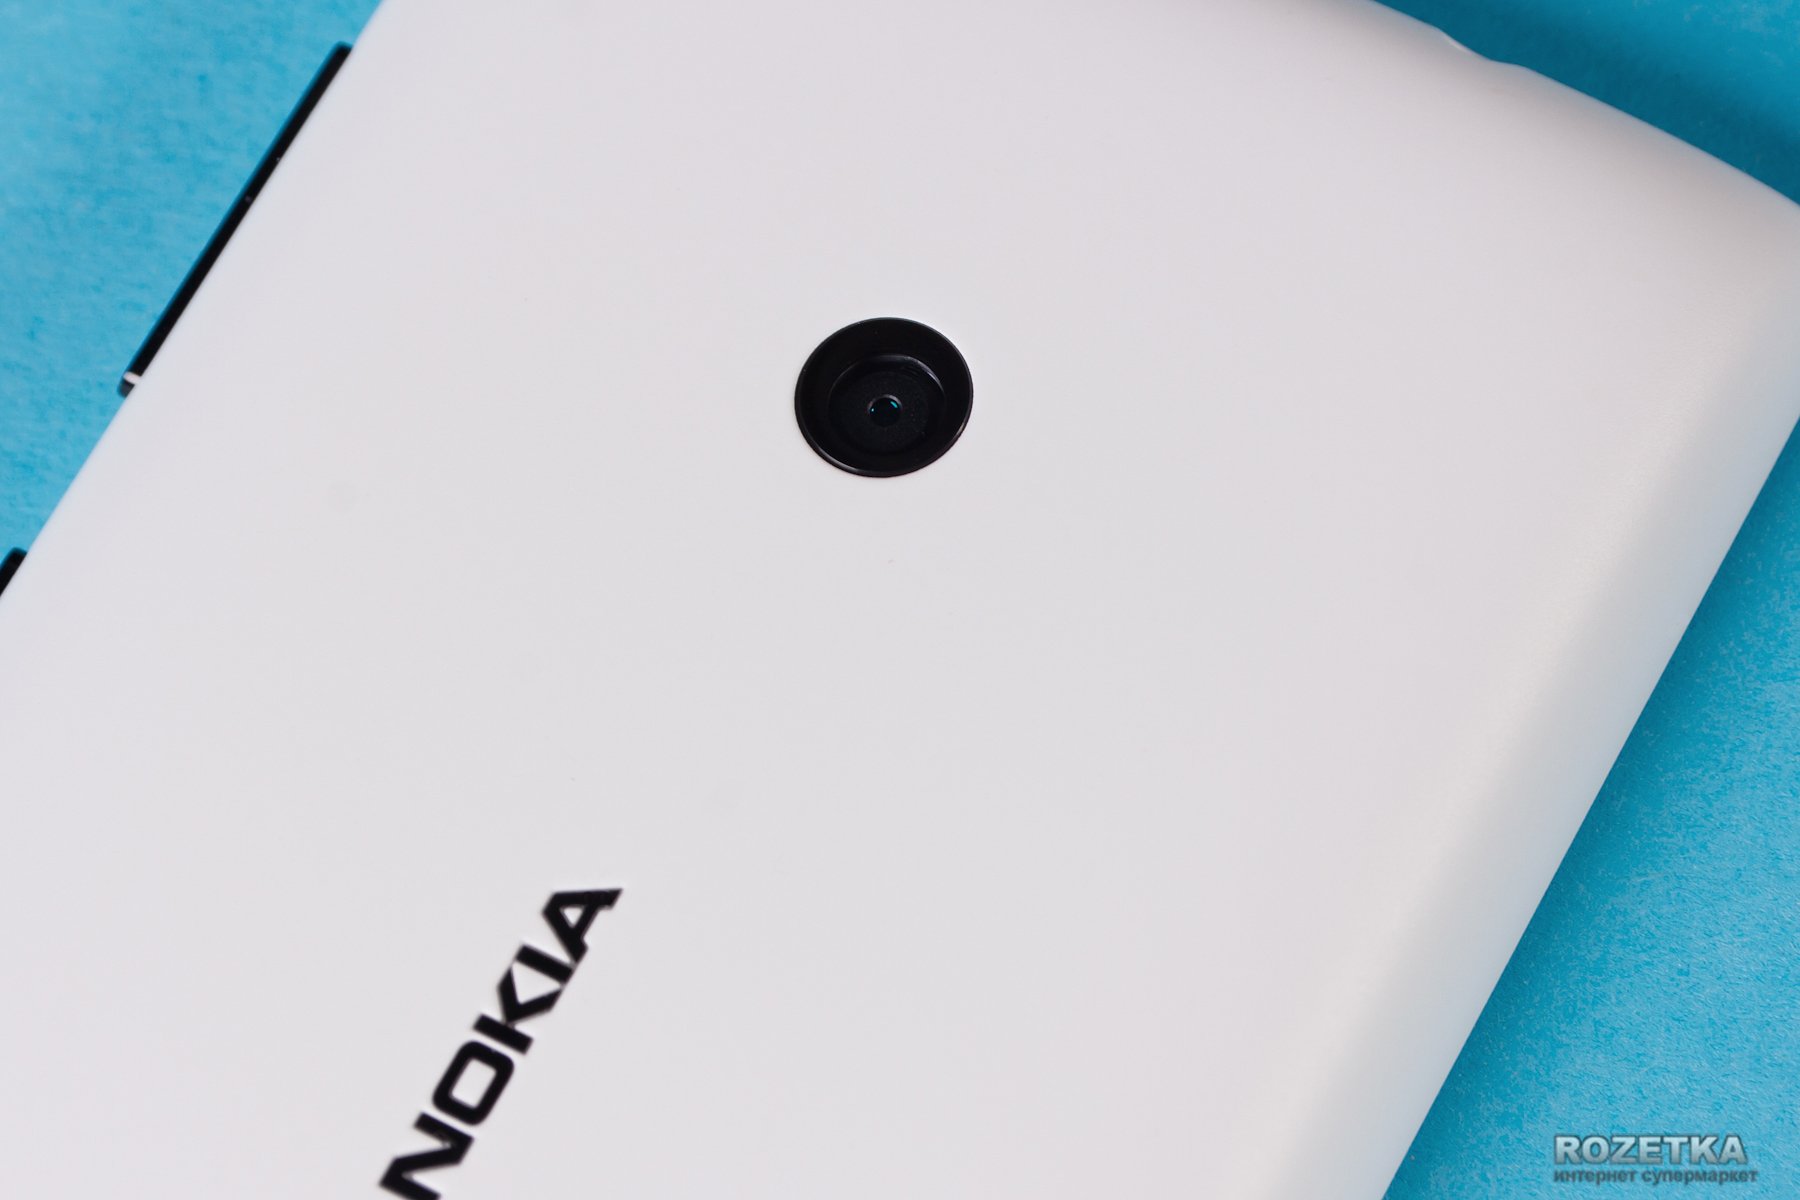 Обзор смартфона Nokia Lumia 520